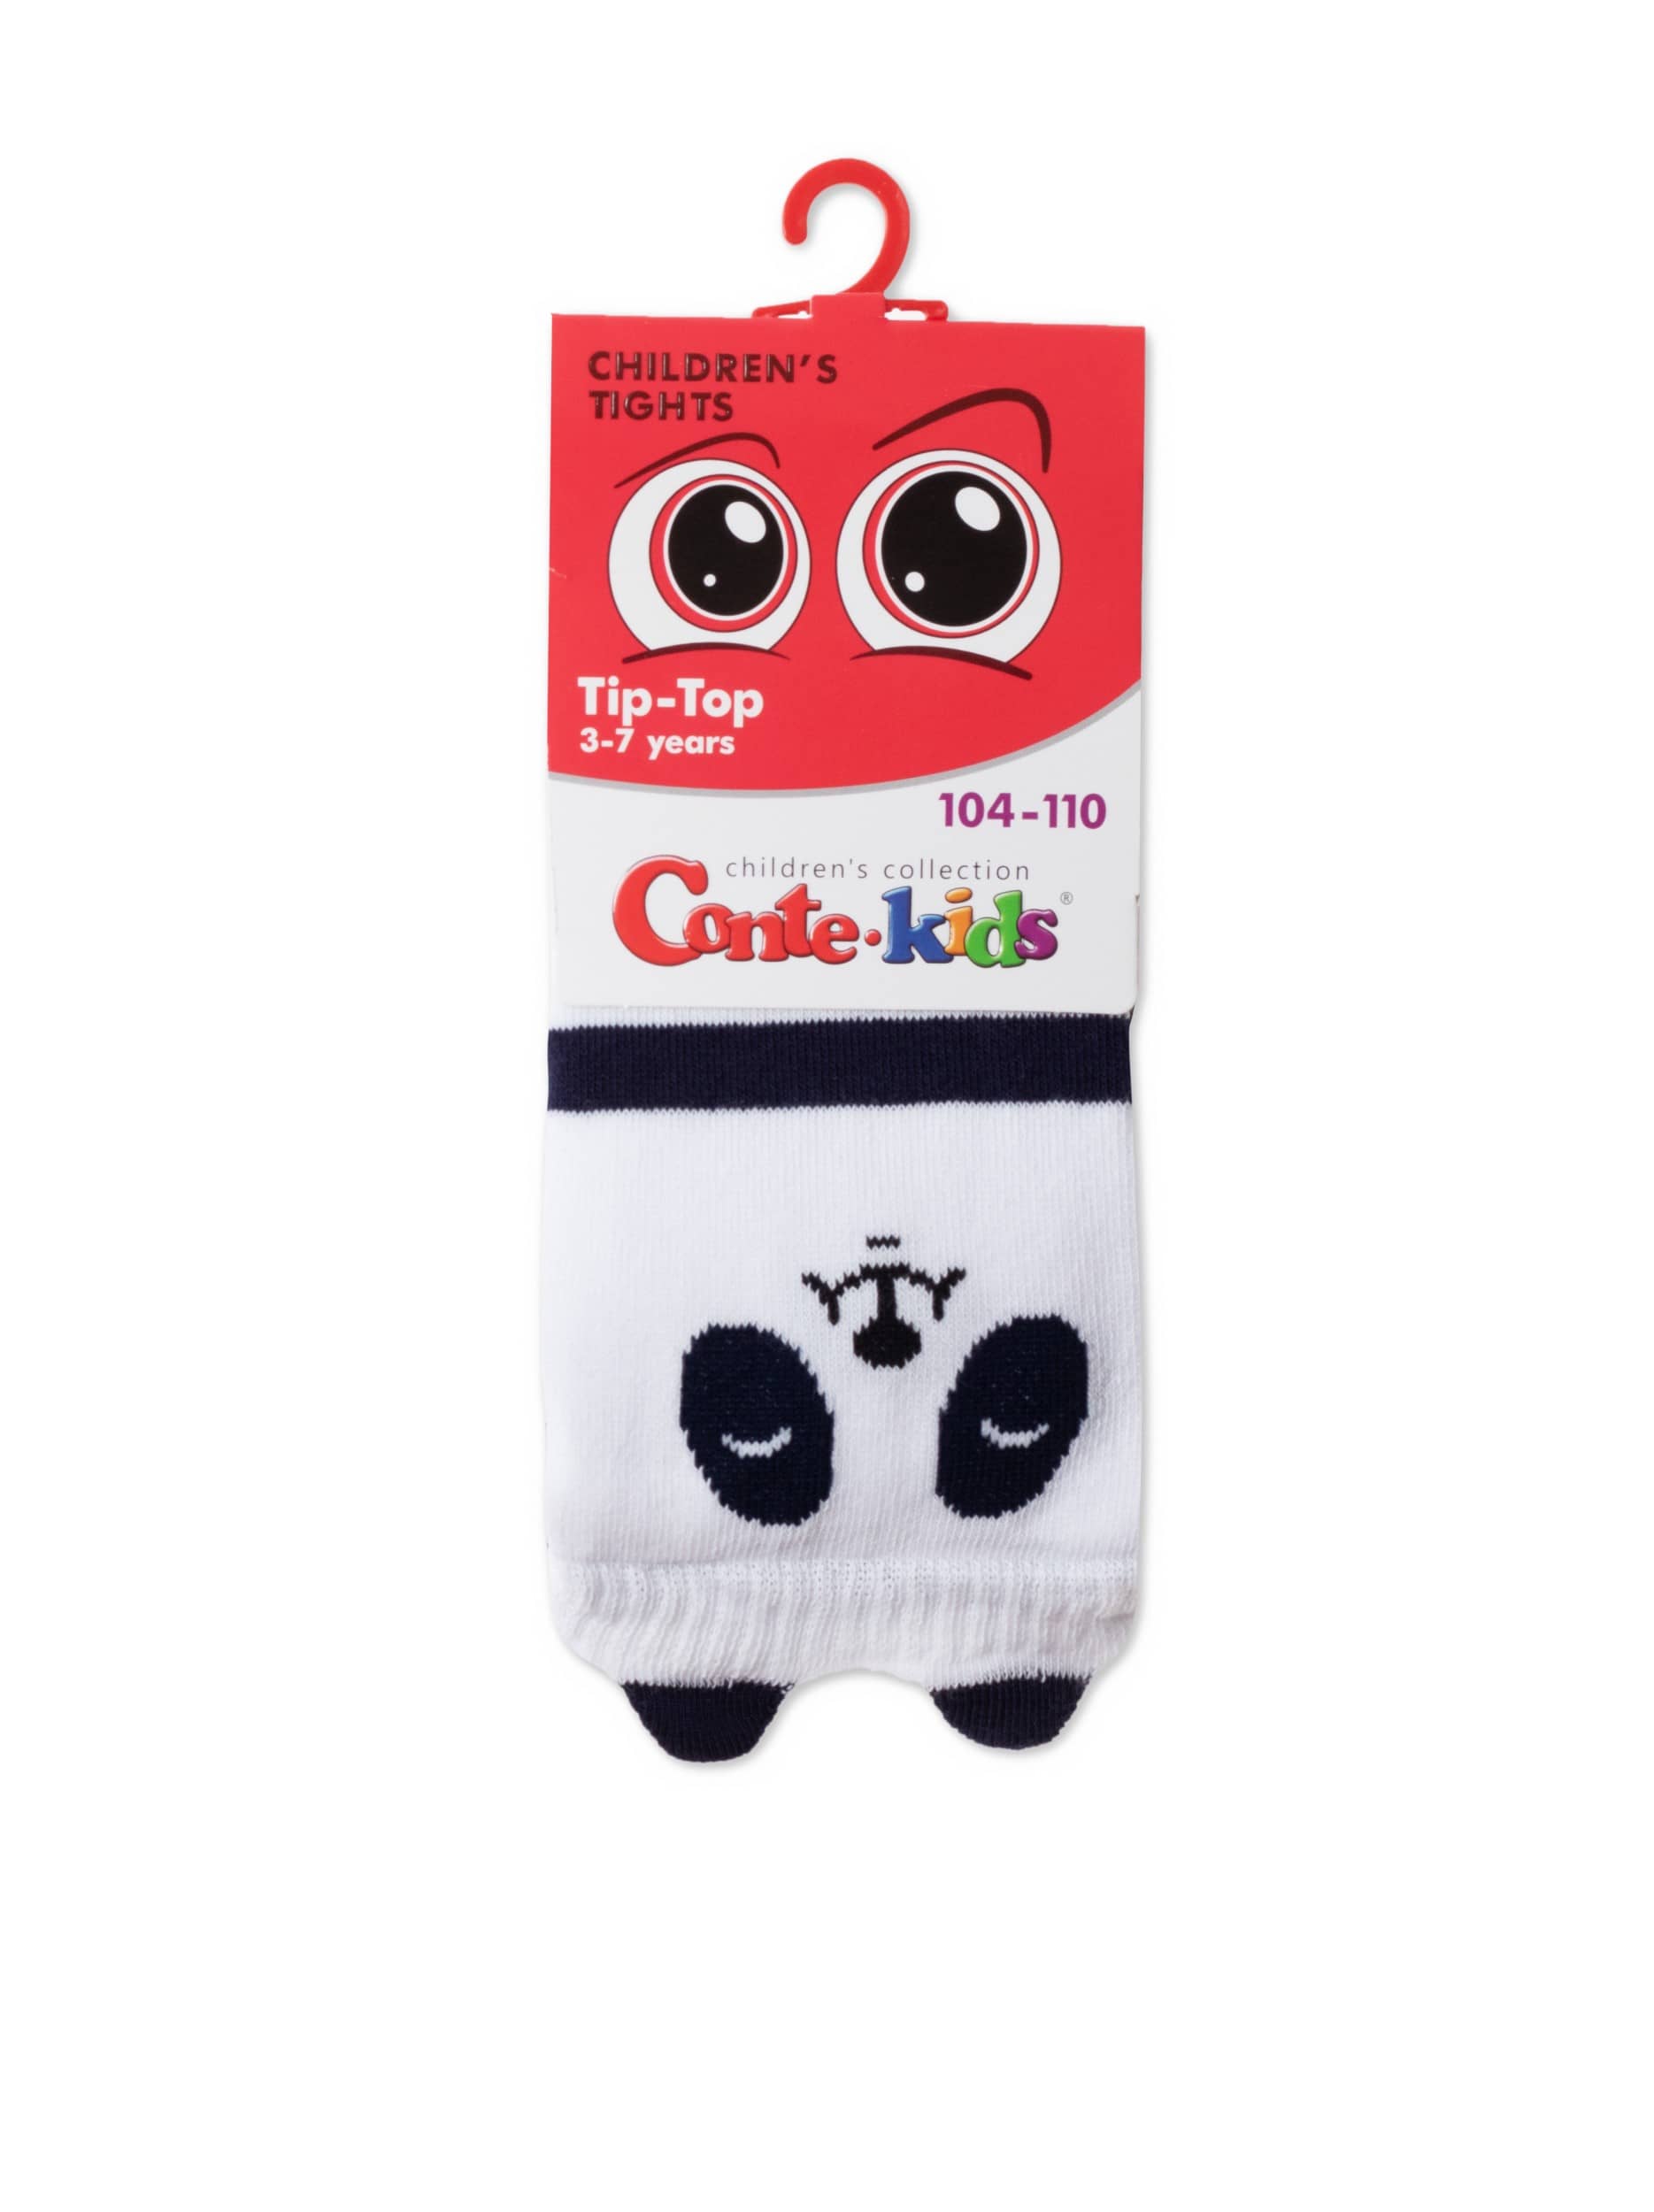 PANDA otroške hlačne nogavice